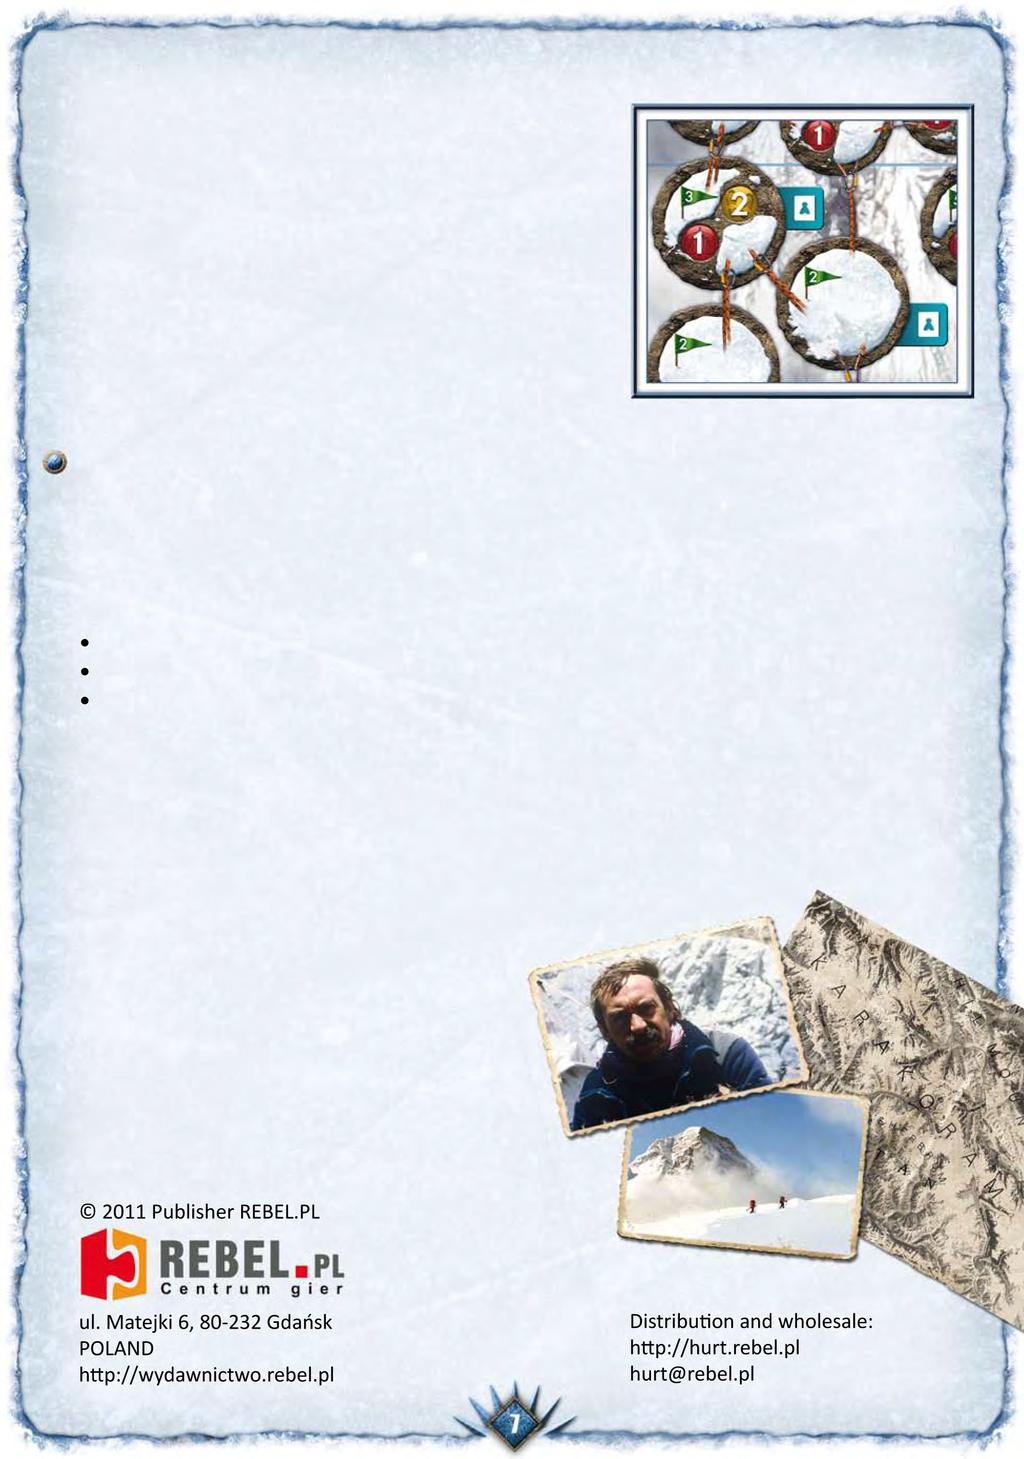 Πόντοι για τις κορυφές Μόλις κάποιος ορειβάτης φτάσει σε μια κορυφή, ο παίκτης παίρνει τον πρώτο δείκτη της κορυφής και τον τοποθετεί στον δείκτη διάσχισης του αντίστοιχου ορειβάτη.